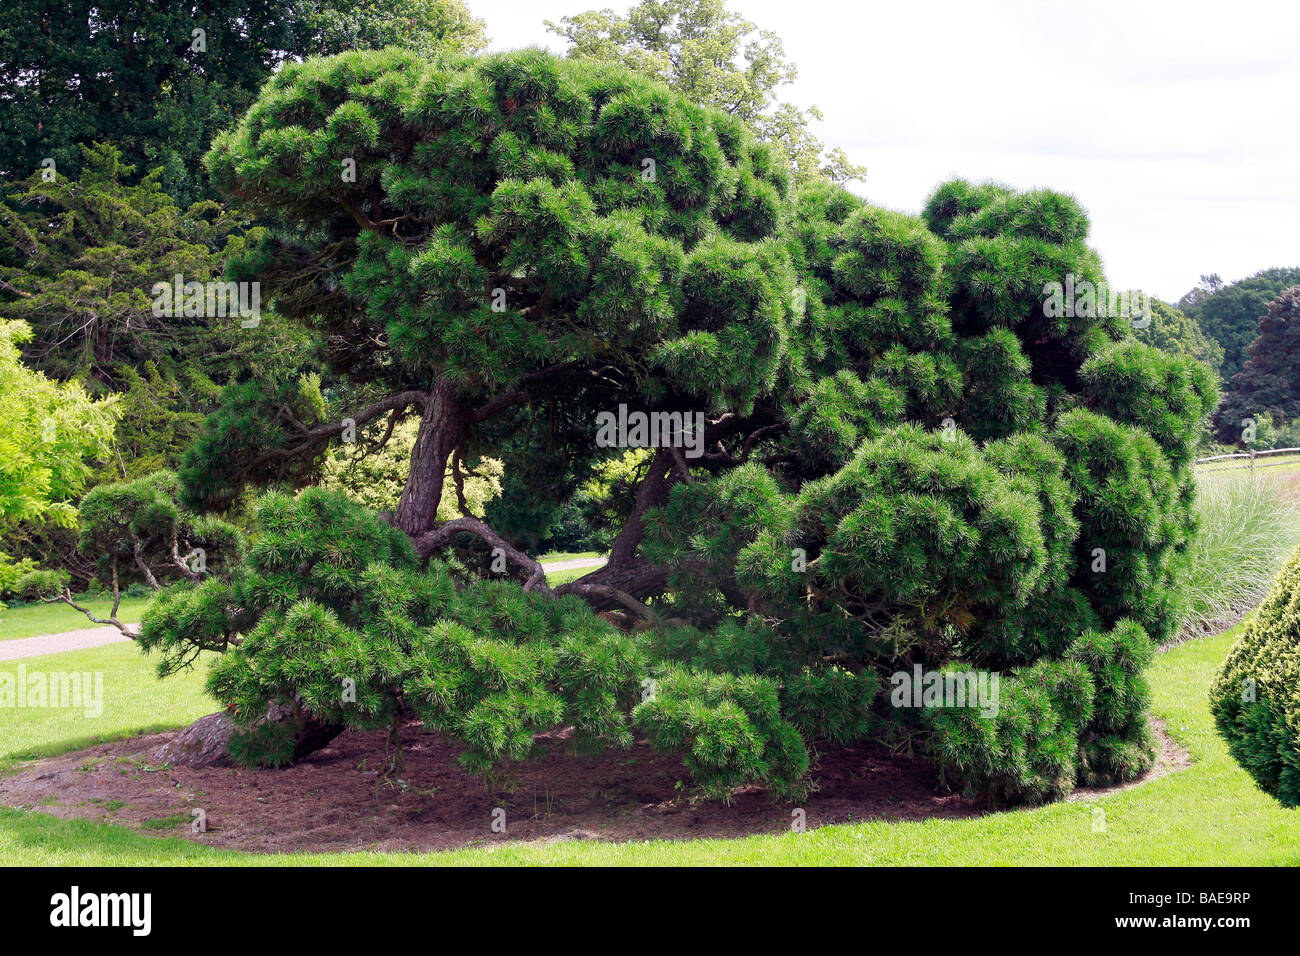 Pinus sylvestris "Moseri" Stock Photo